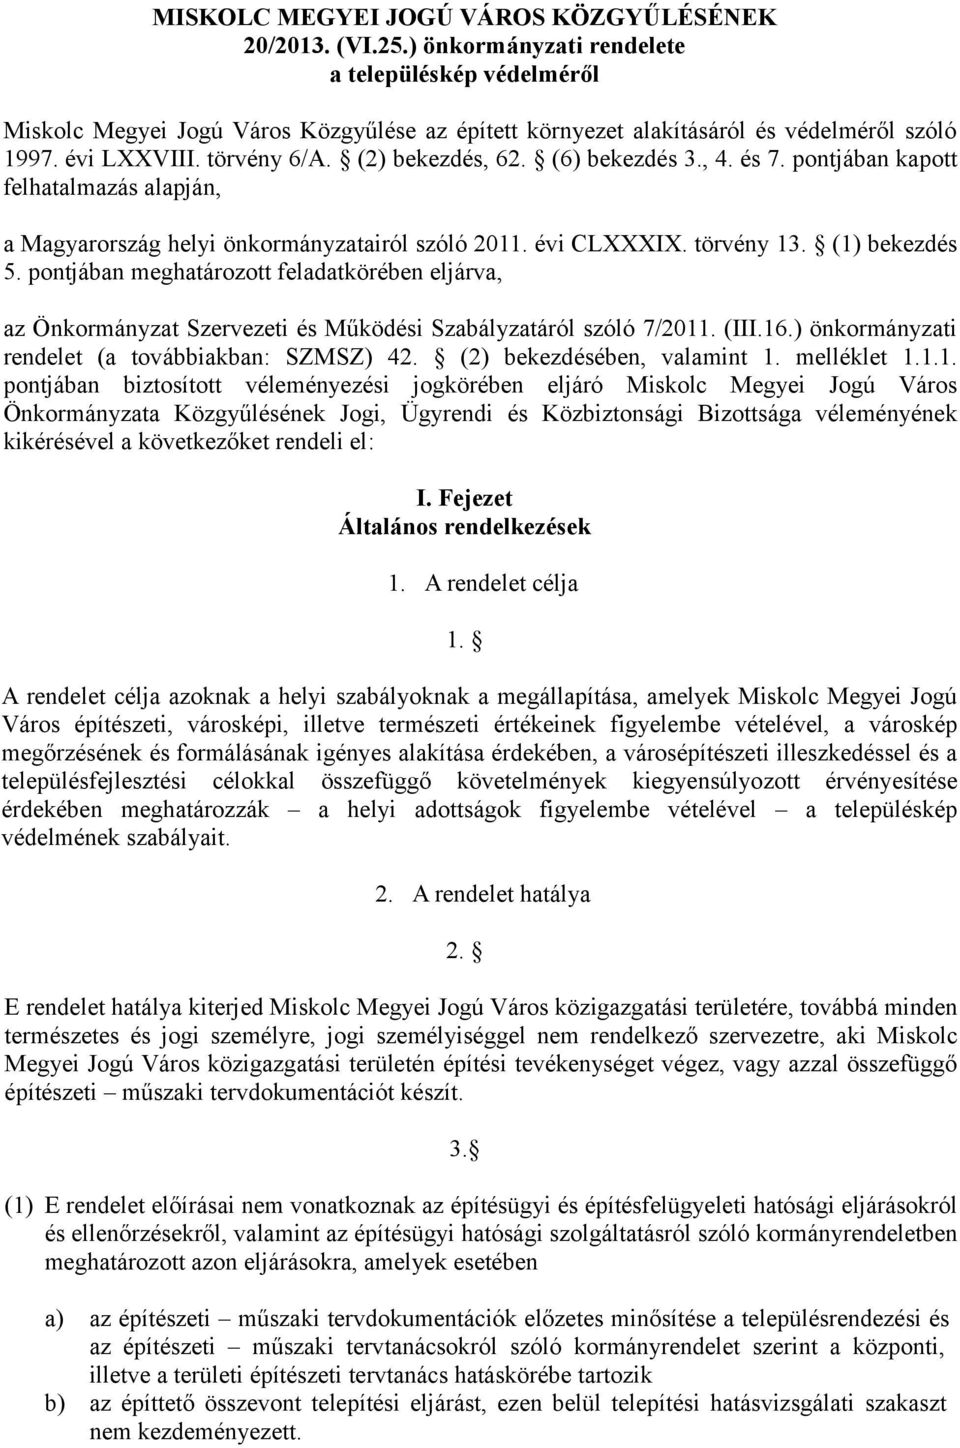 (6) bekezdés 3., 4. és 7. pontjában kapott felhatalmazás alapján, a Magyarország helyi önkormányzatairól szóló 2011. évi CLXXXIX. törvény 13. (1) bekezdés 5.